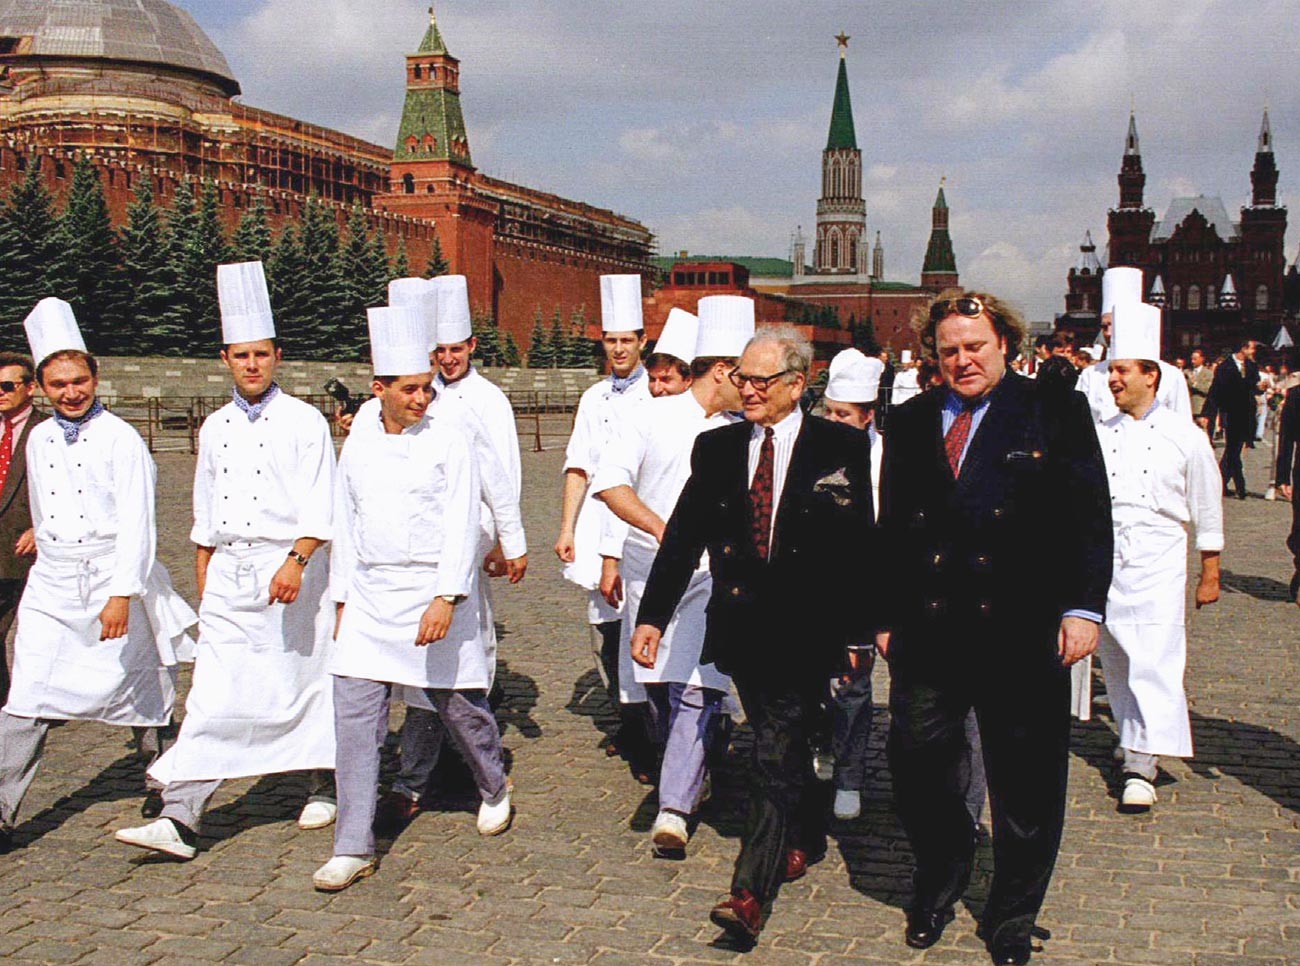 Pierre Cardin accompagné de son assistant Jeff Knipper, ainsi que du personnel du Maxim's inauguré à Moscou, marchant sur la place Rouge